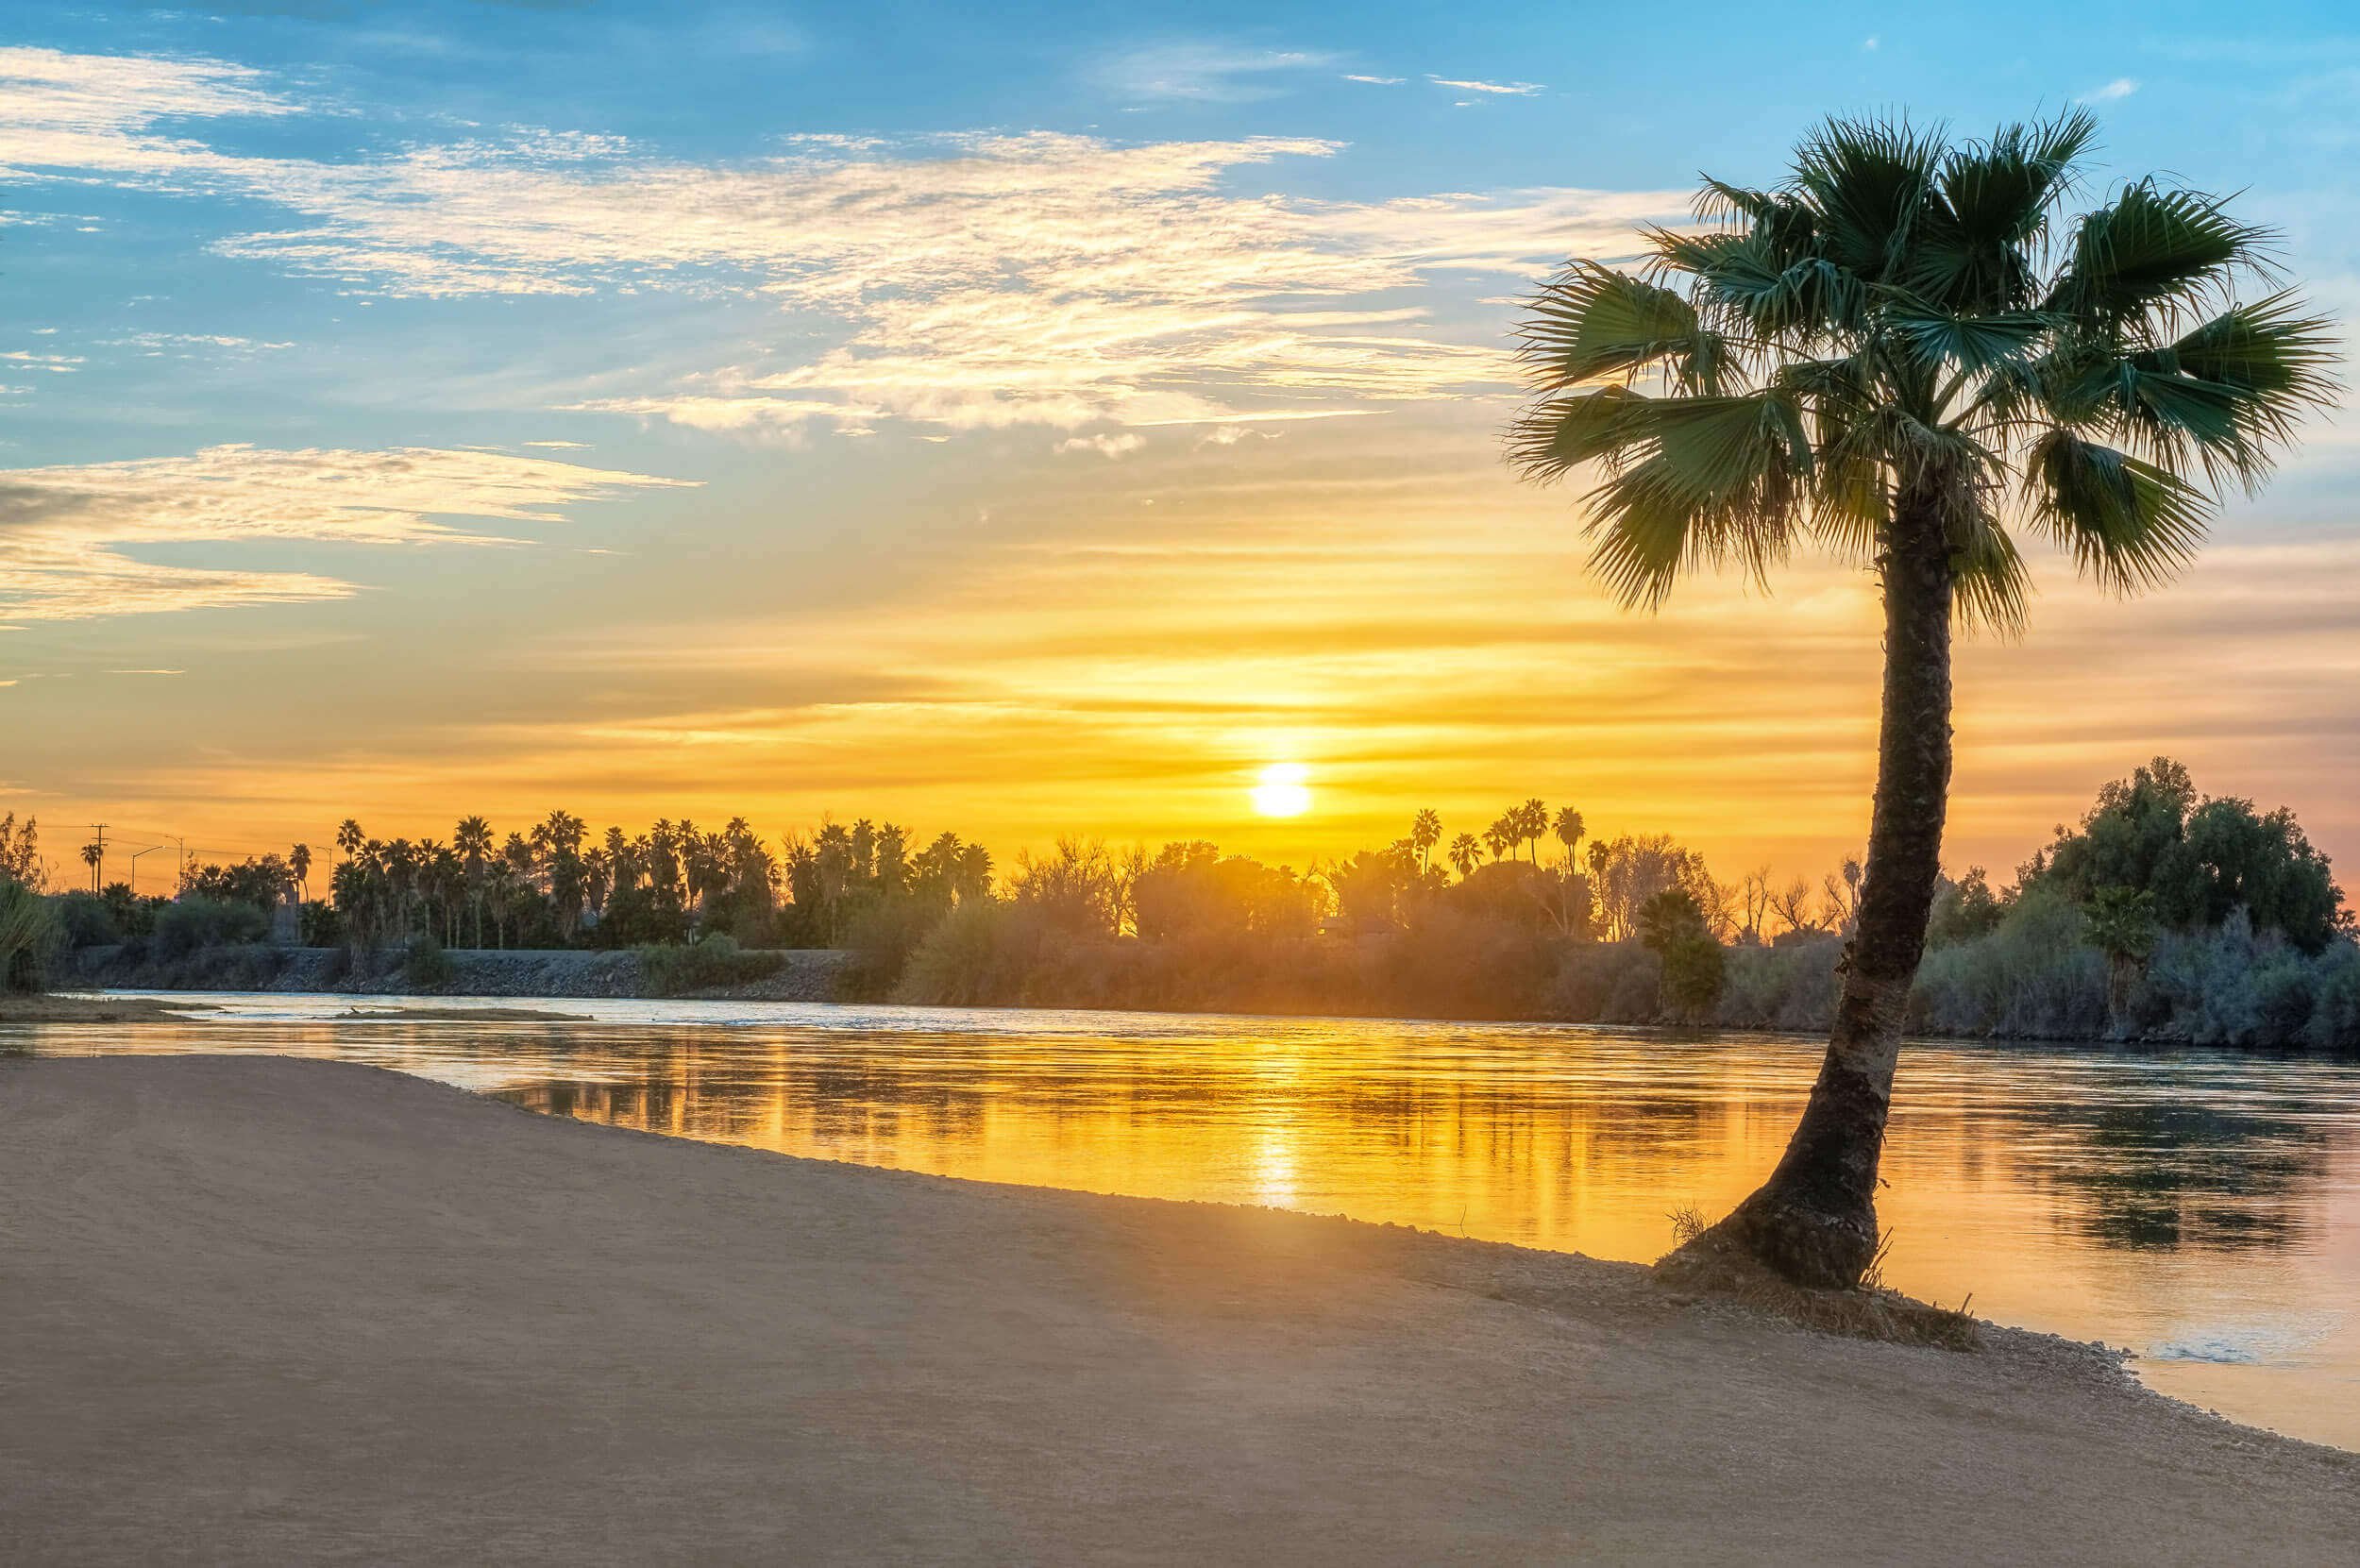 beach-palm-tree-sunset-colorado-river.jpg